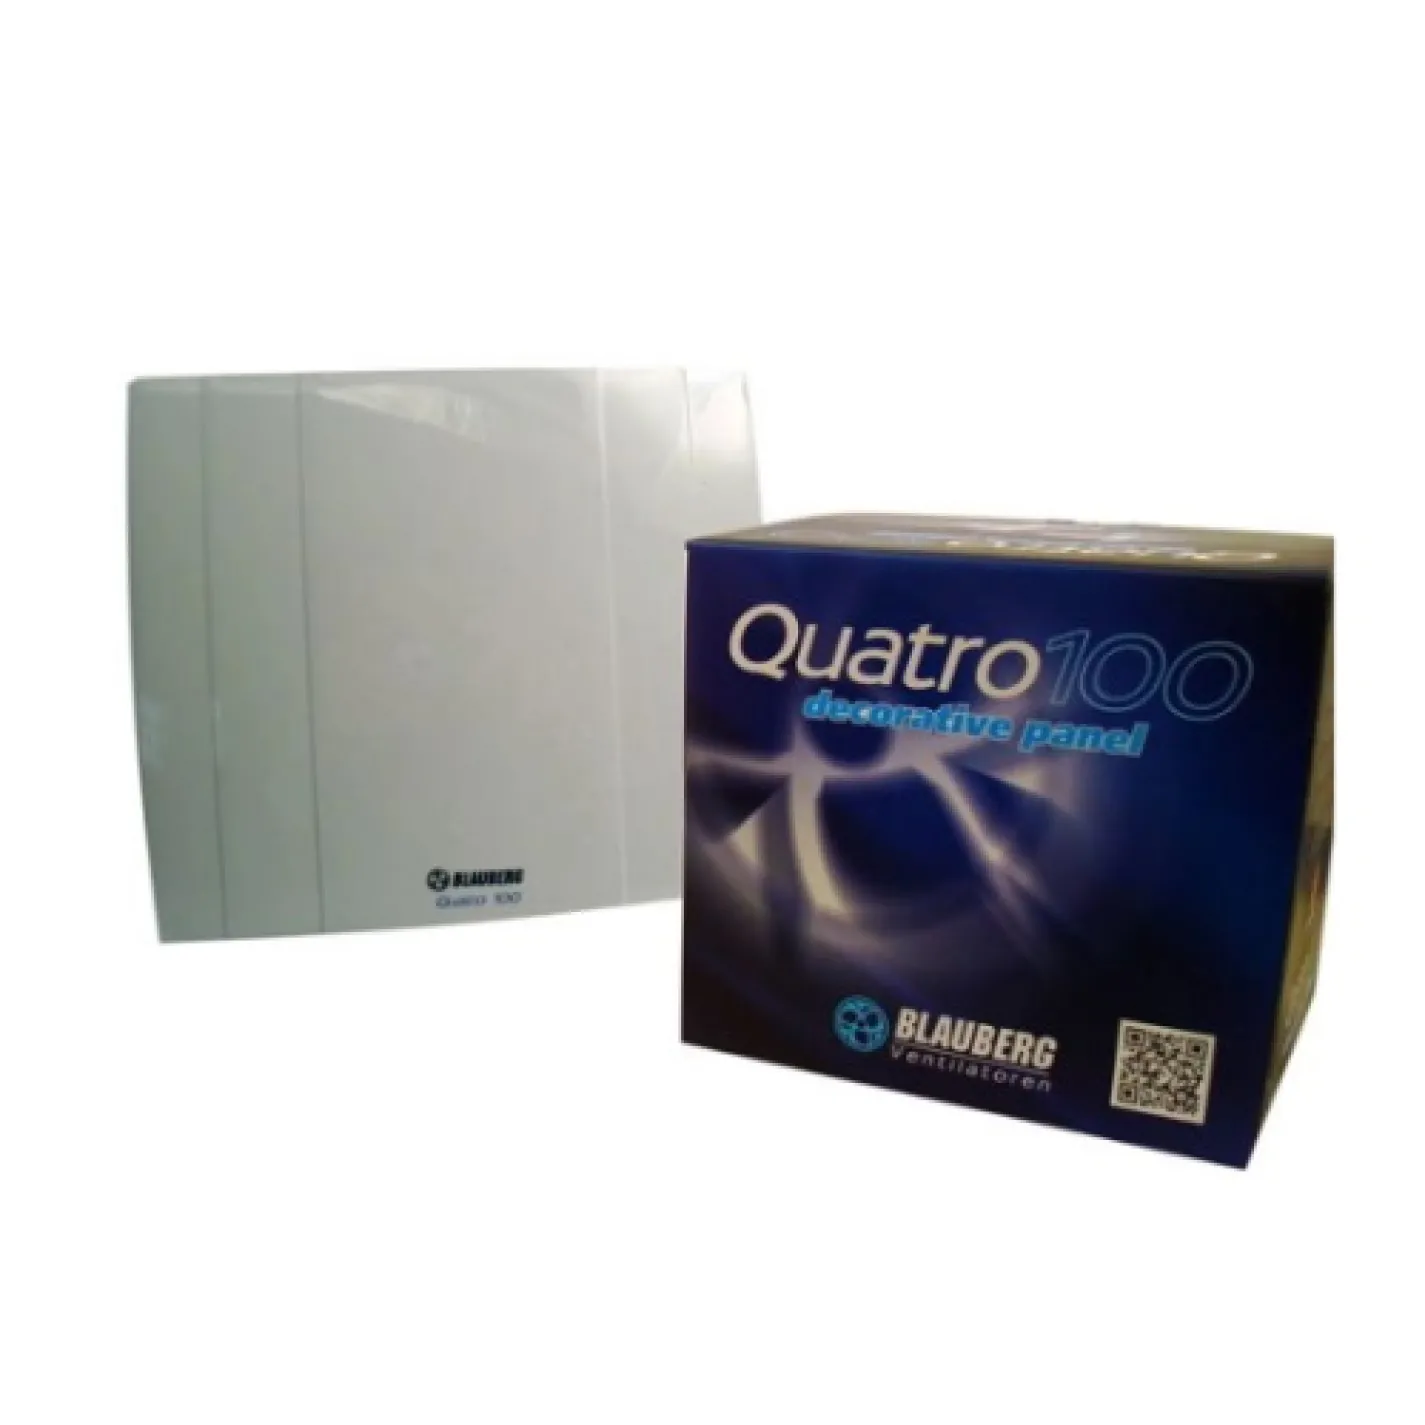 Вытяжной вентилятор Blauberg Quatro 125 - Фото 2